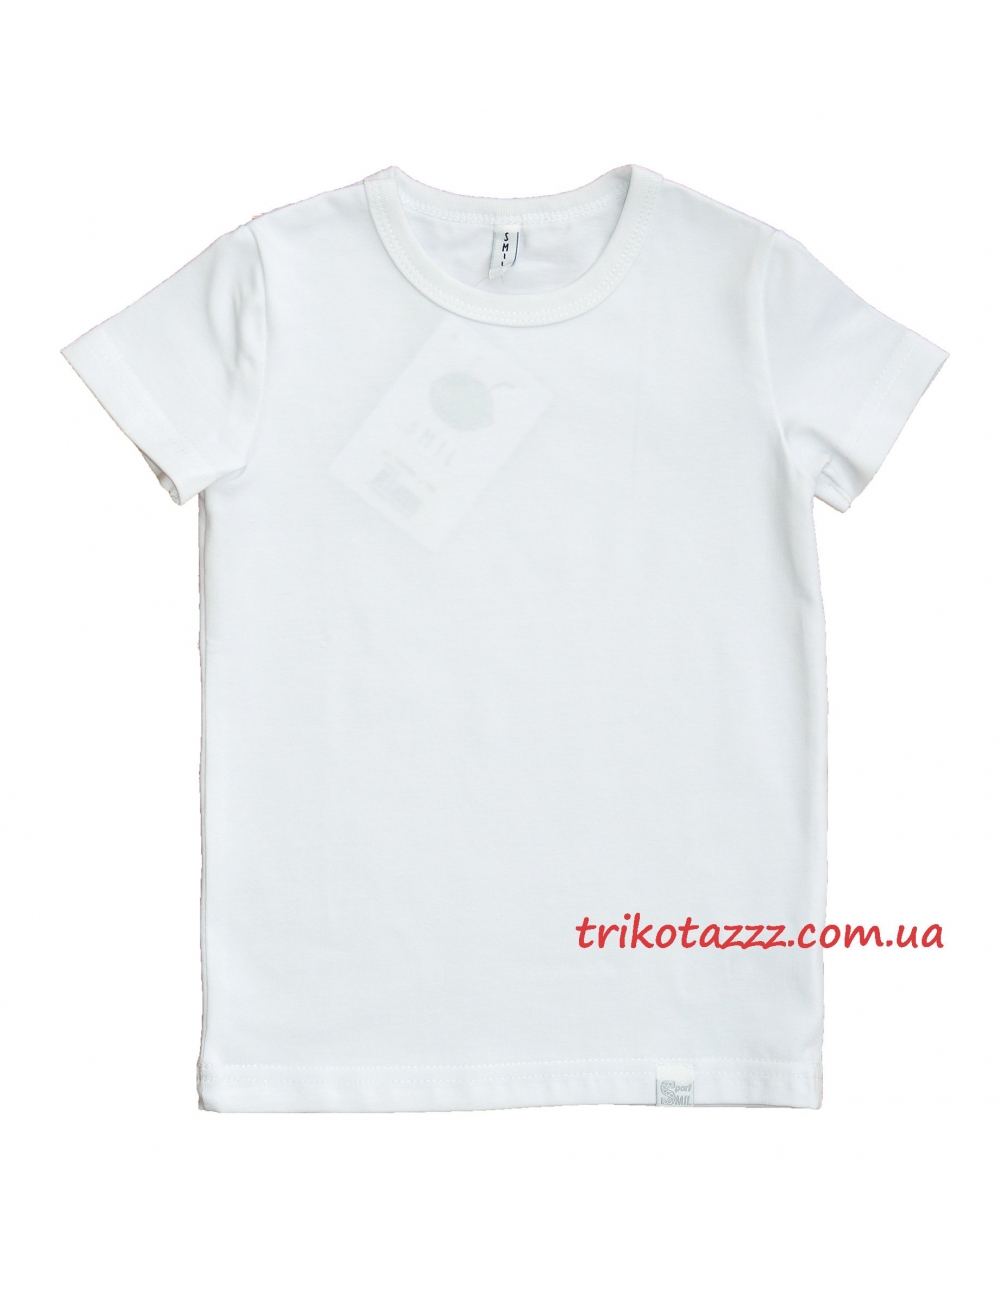 Детская футболка для девочки белая спортивная тм"Смил" 